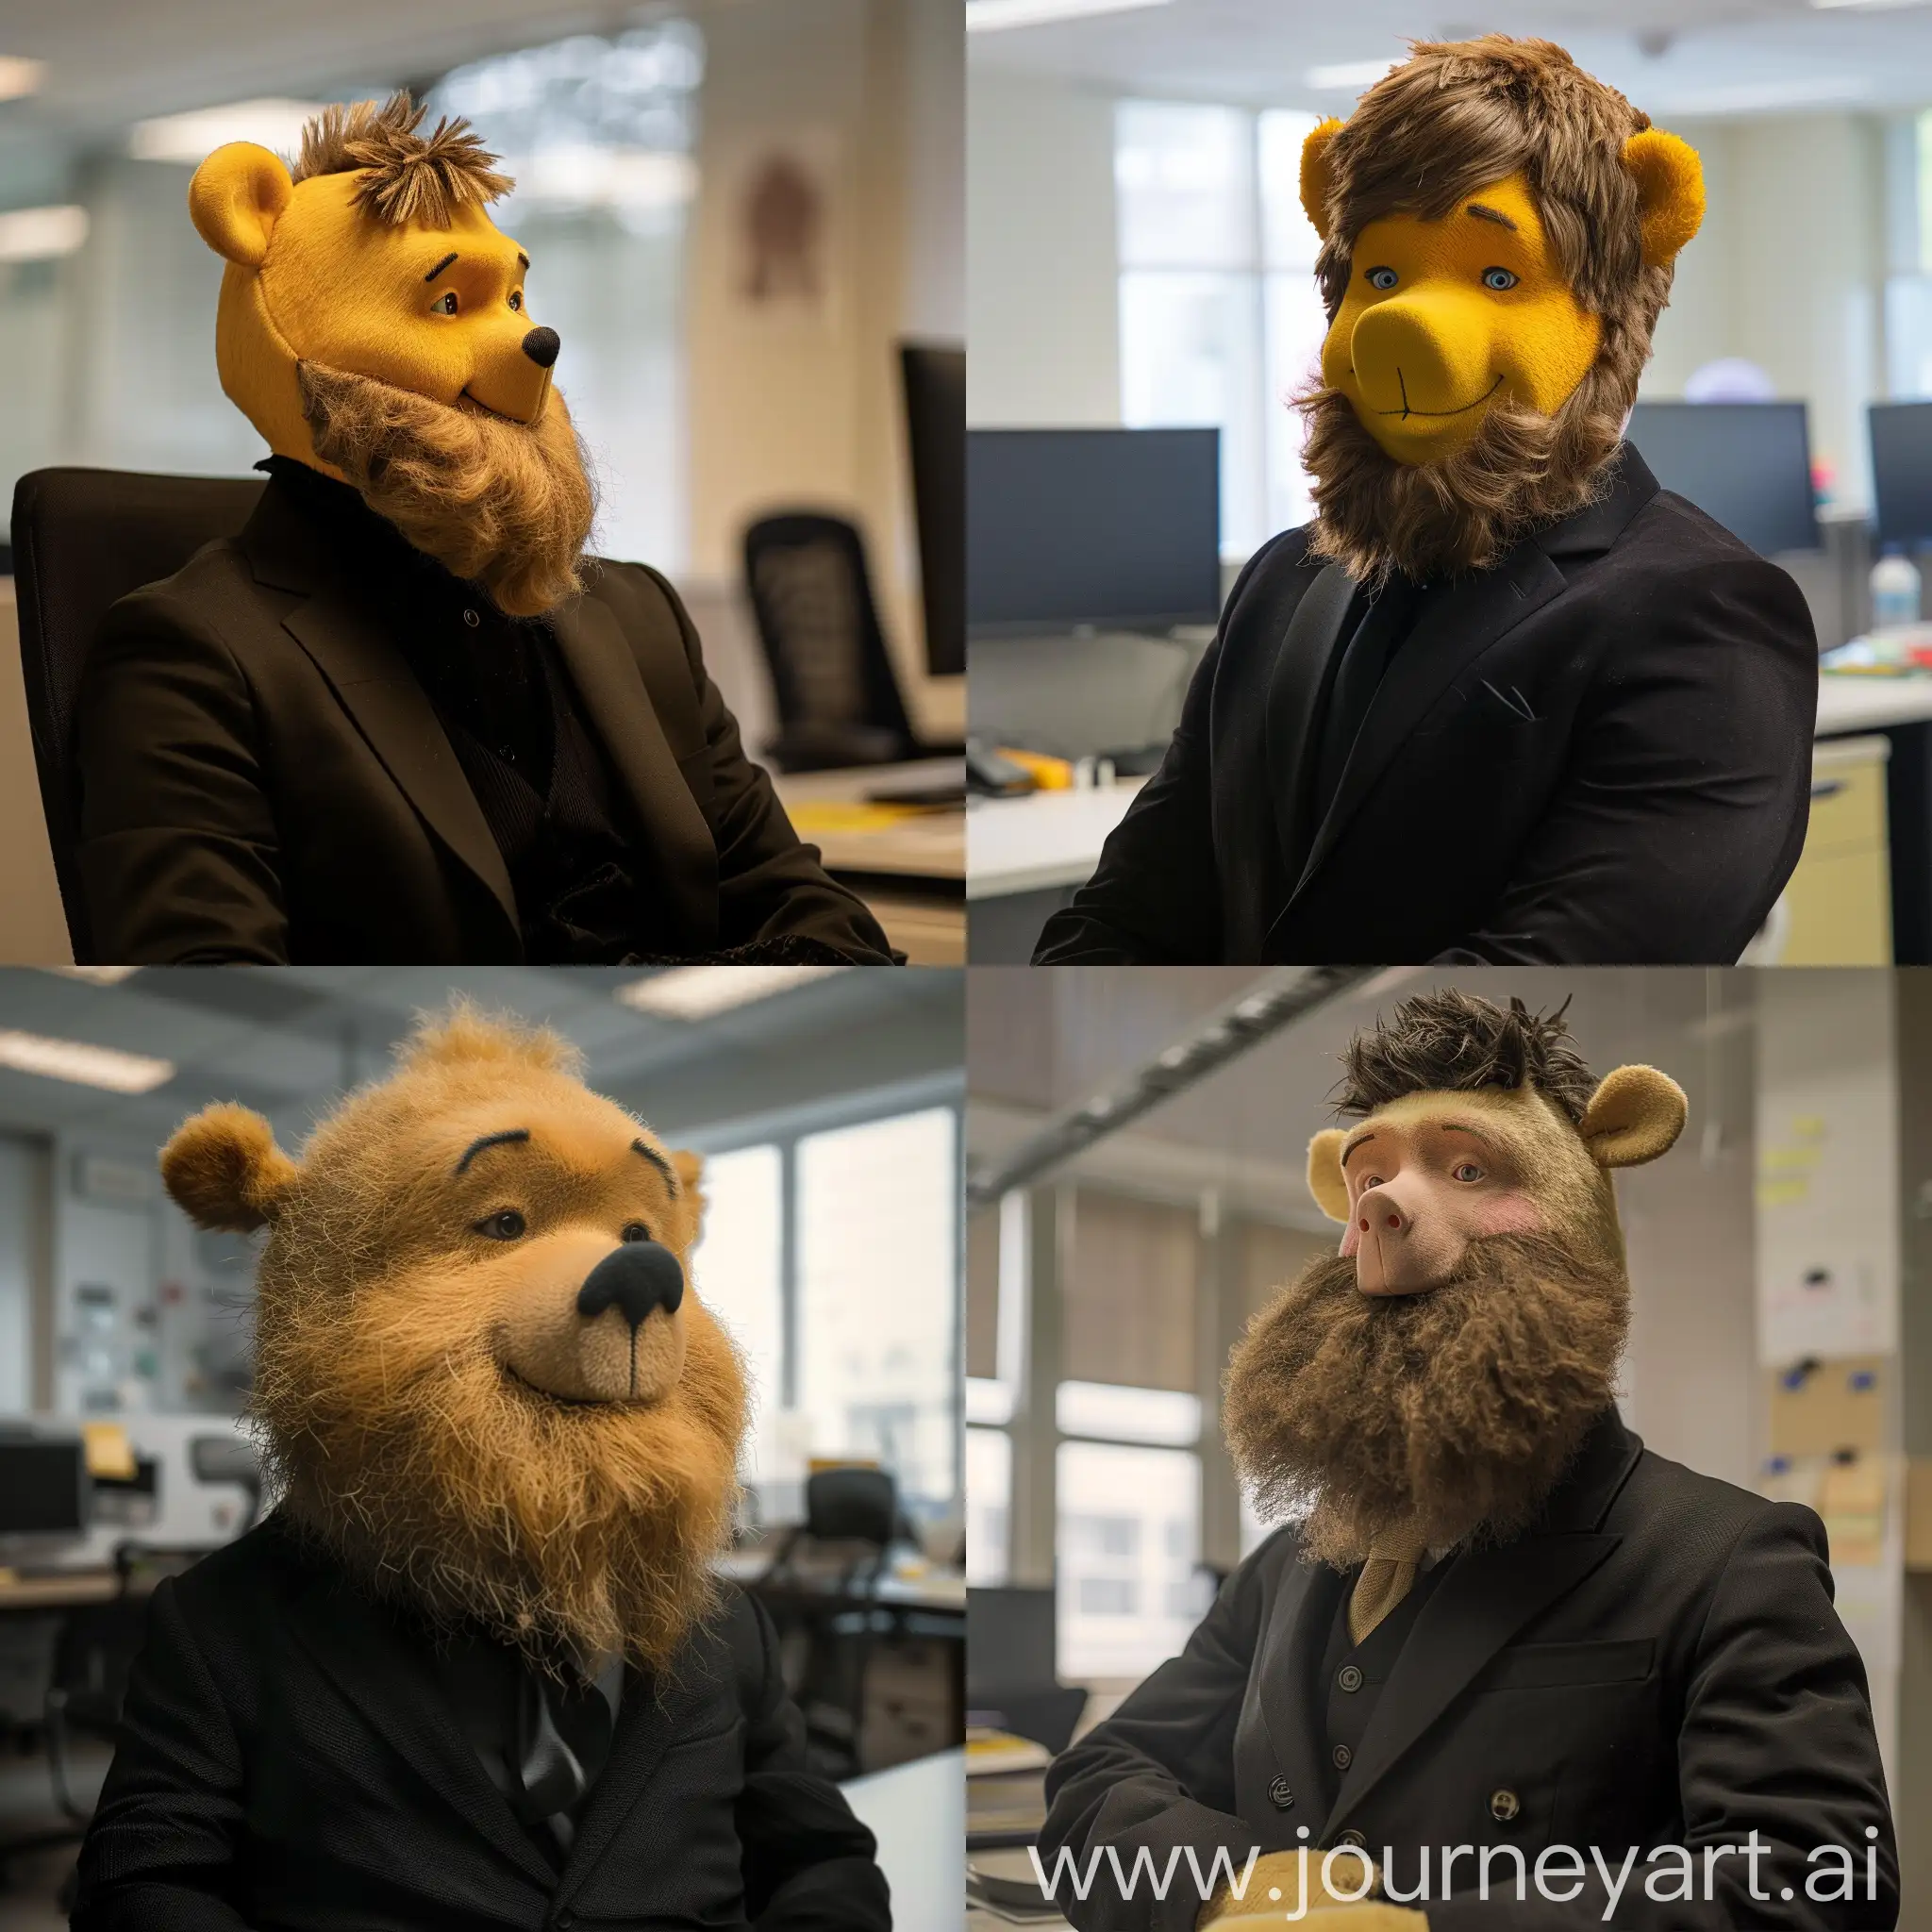 winnie the pooh, con barba, en una oficina, con traje negro